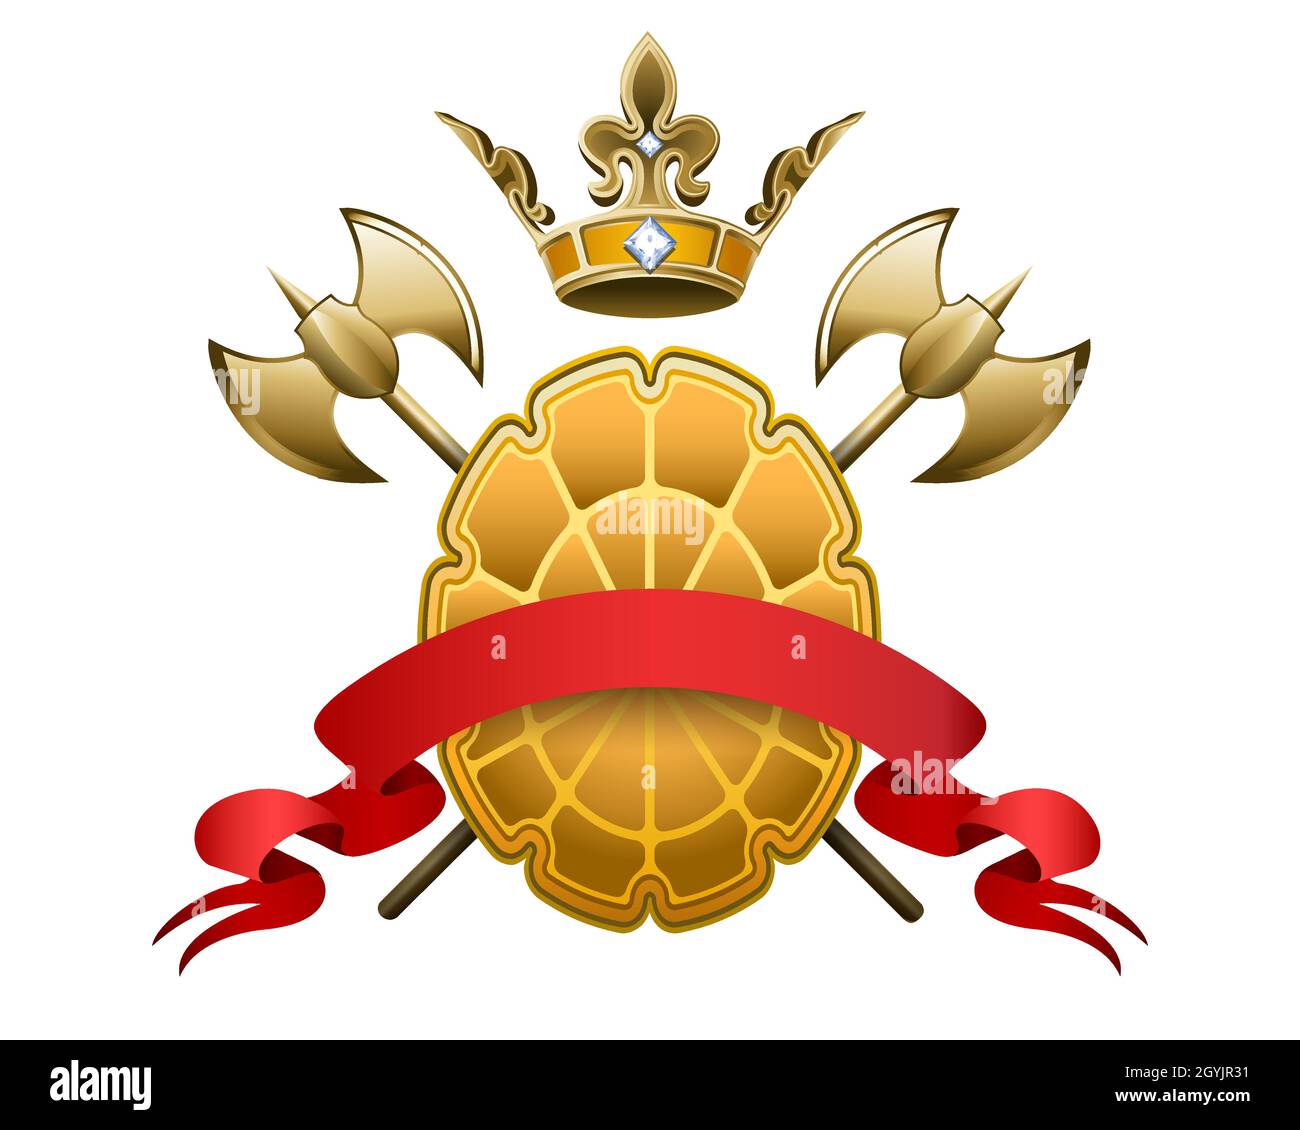 Wappen mit gekreuzten Achsen mit goldenem Kronenschild und rotem Banner isoliert auf Weiß. Vektorgrafik. Stock Vektor